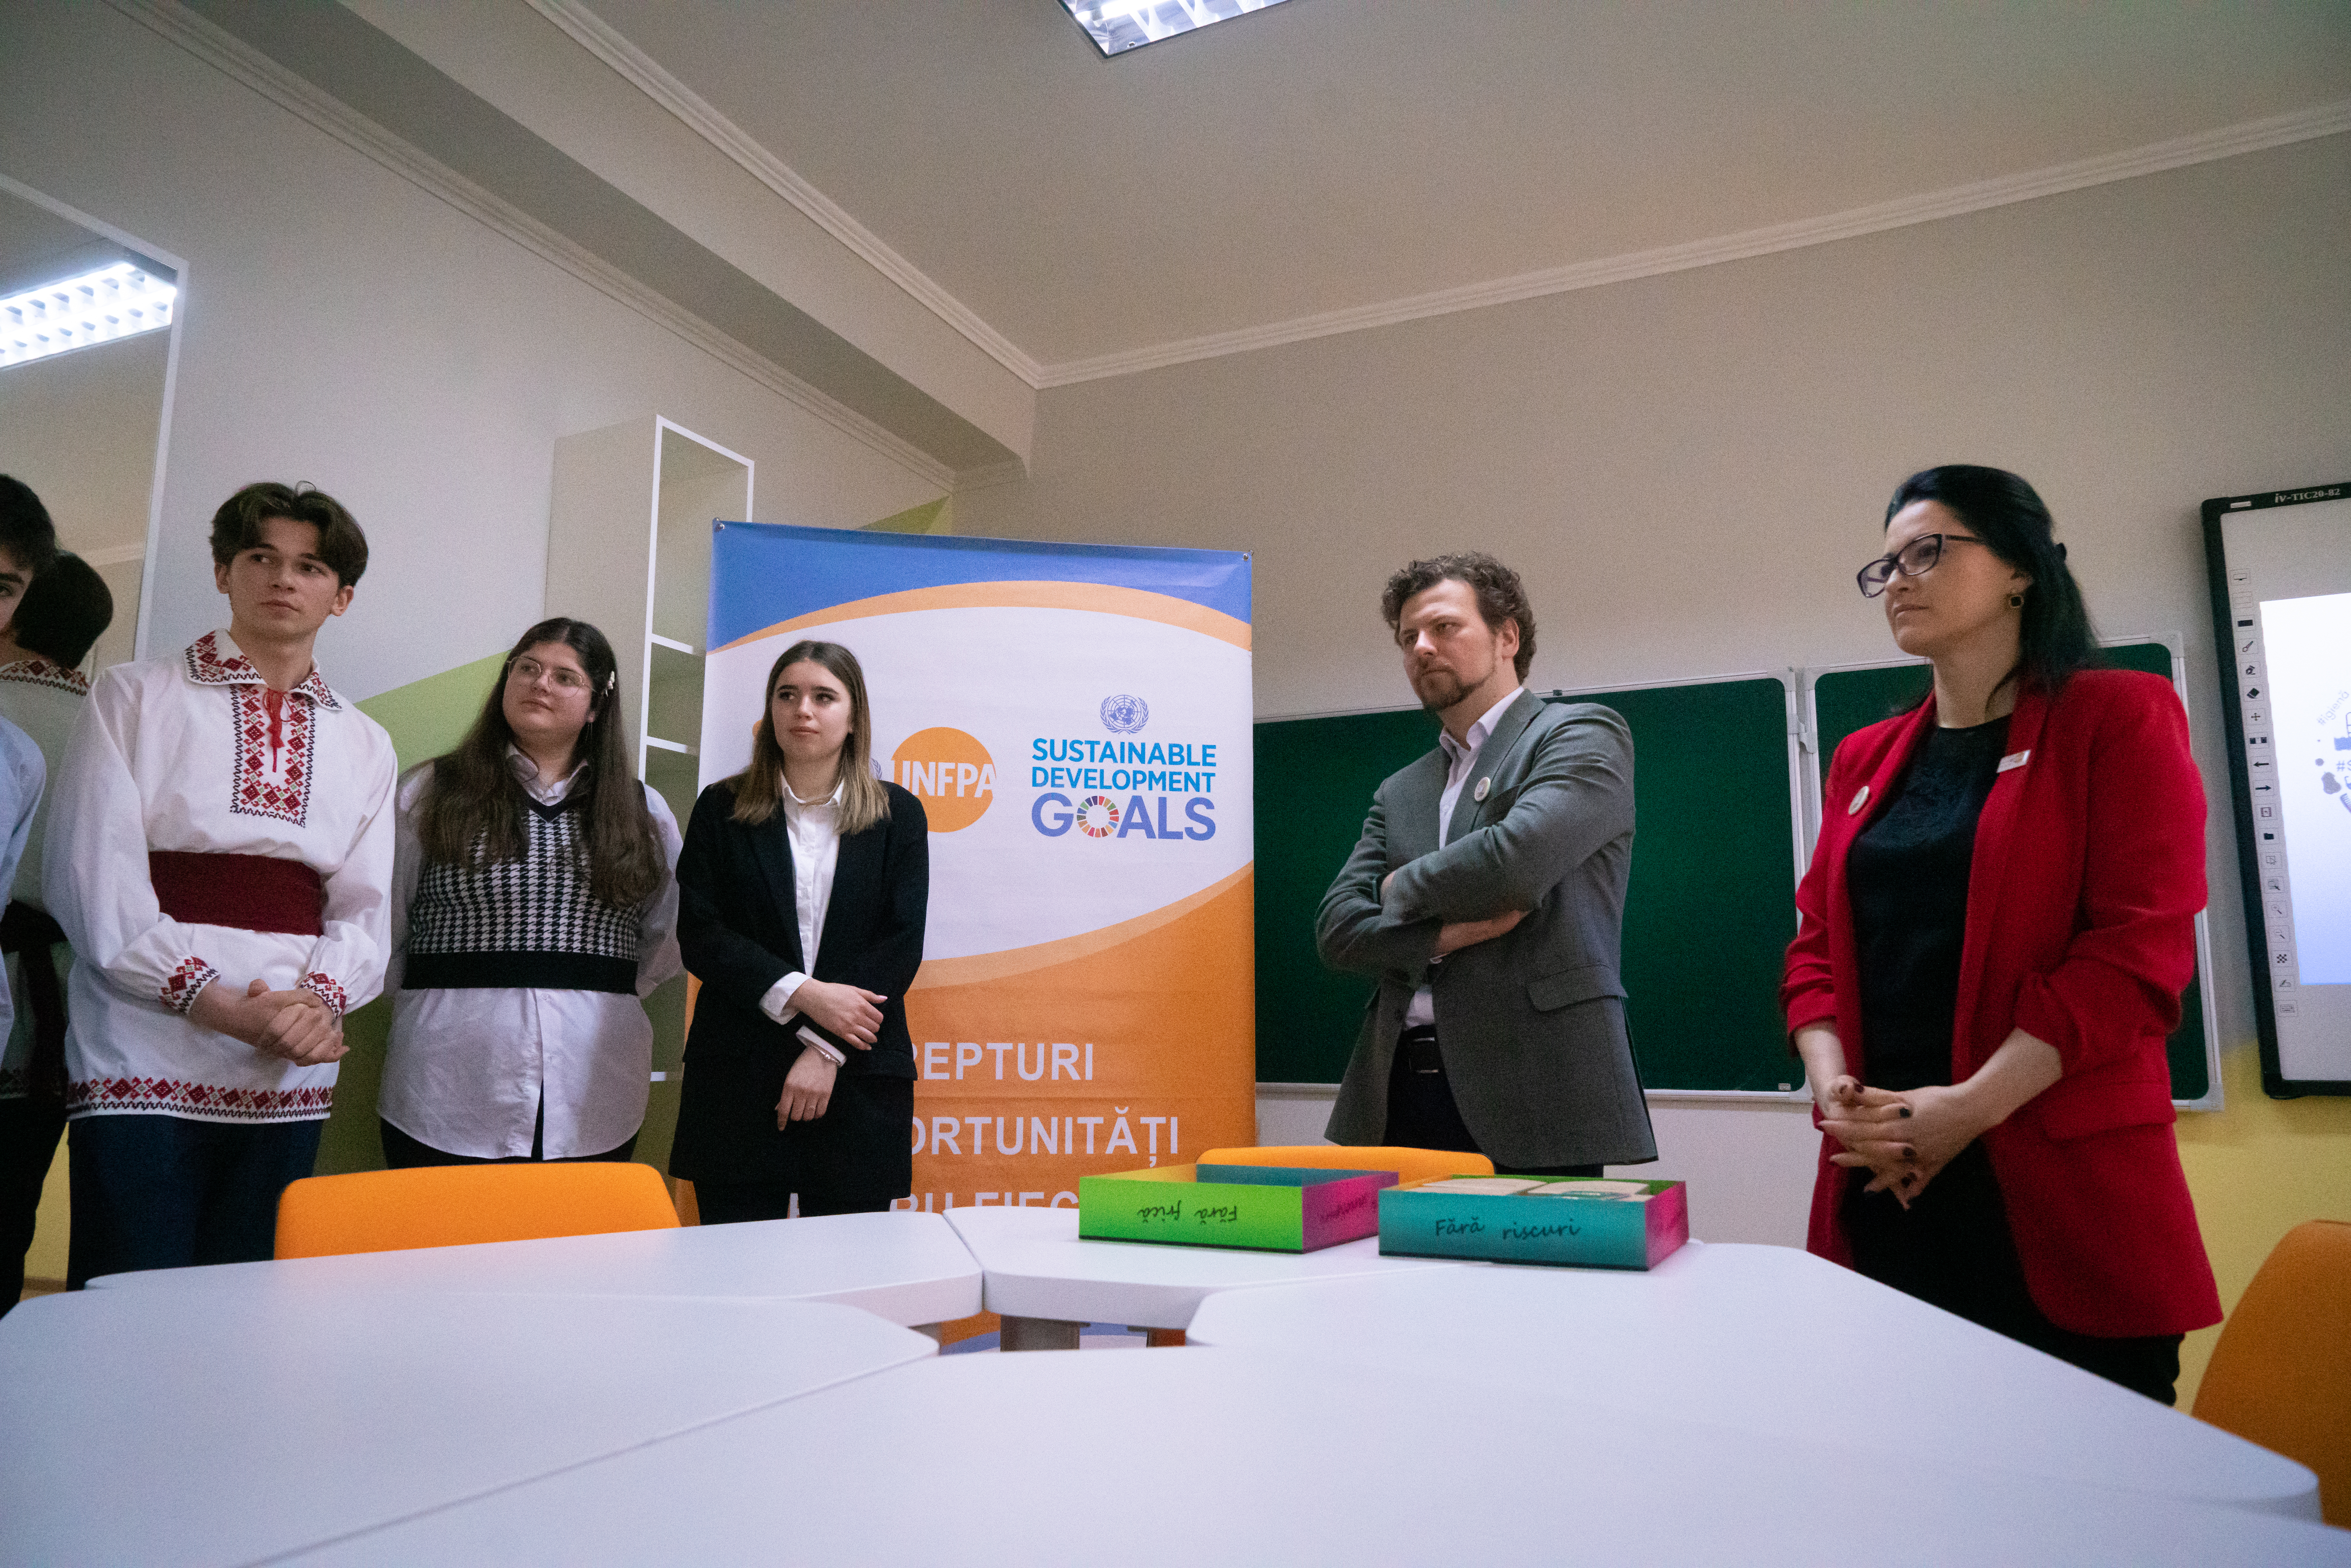 Absorbante gratis în patru școli din Moldova. Ministrul Educației, prezent la lansarea inițiativei